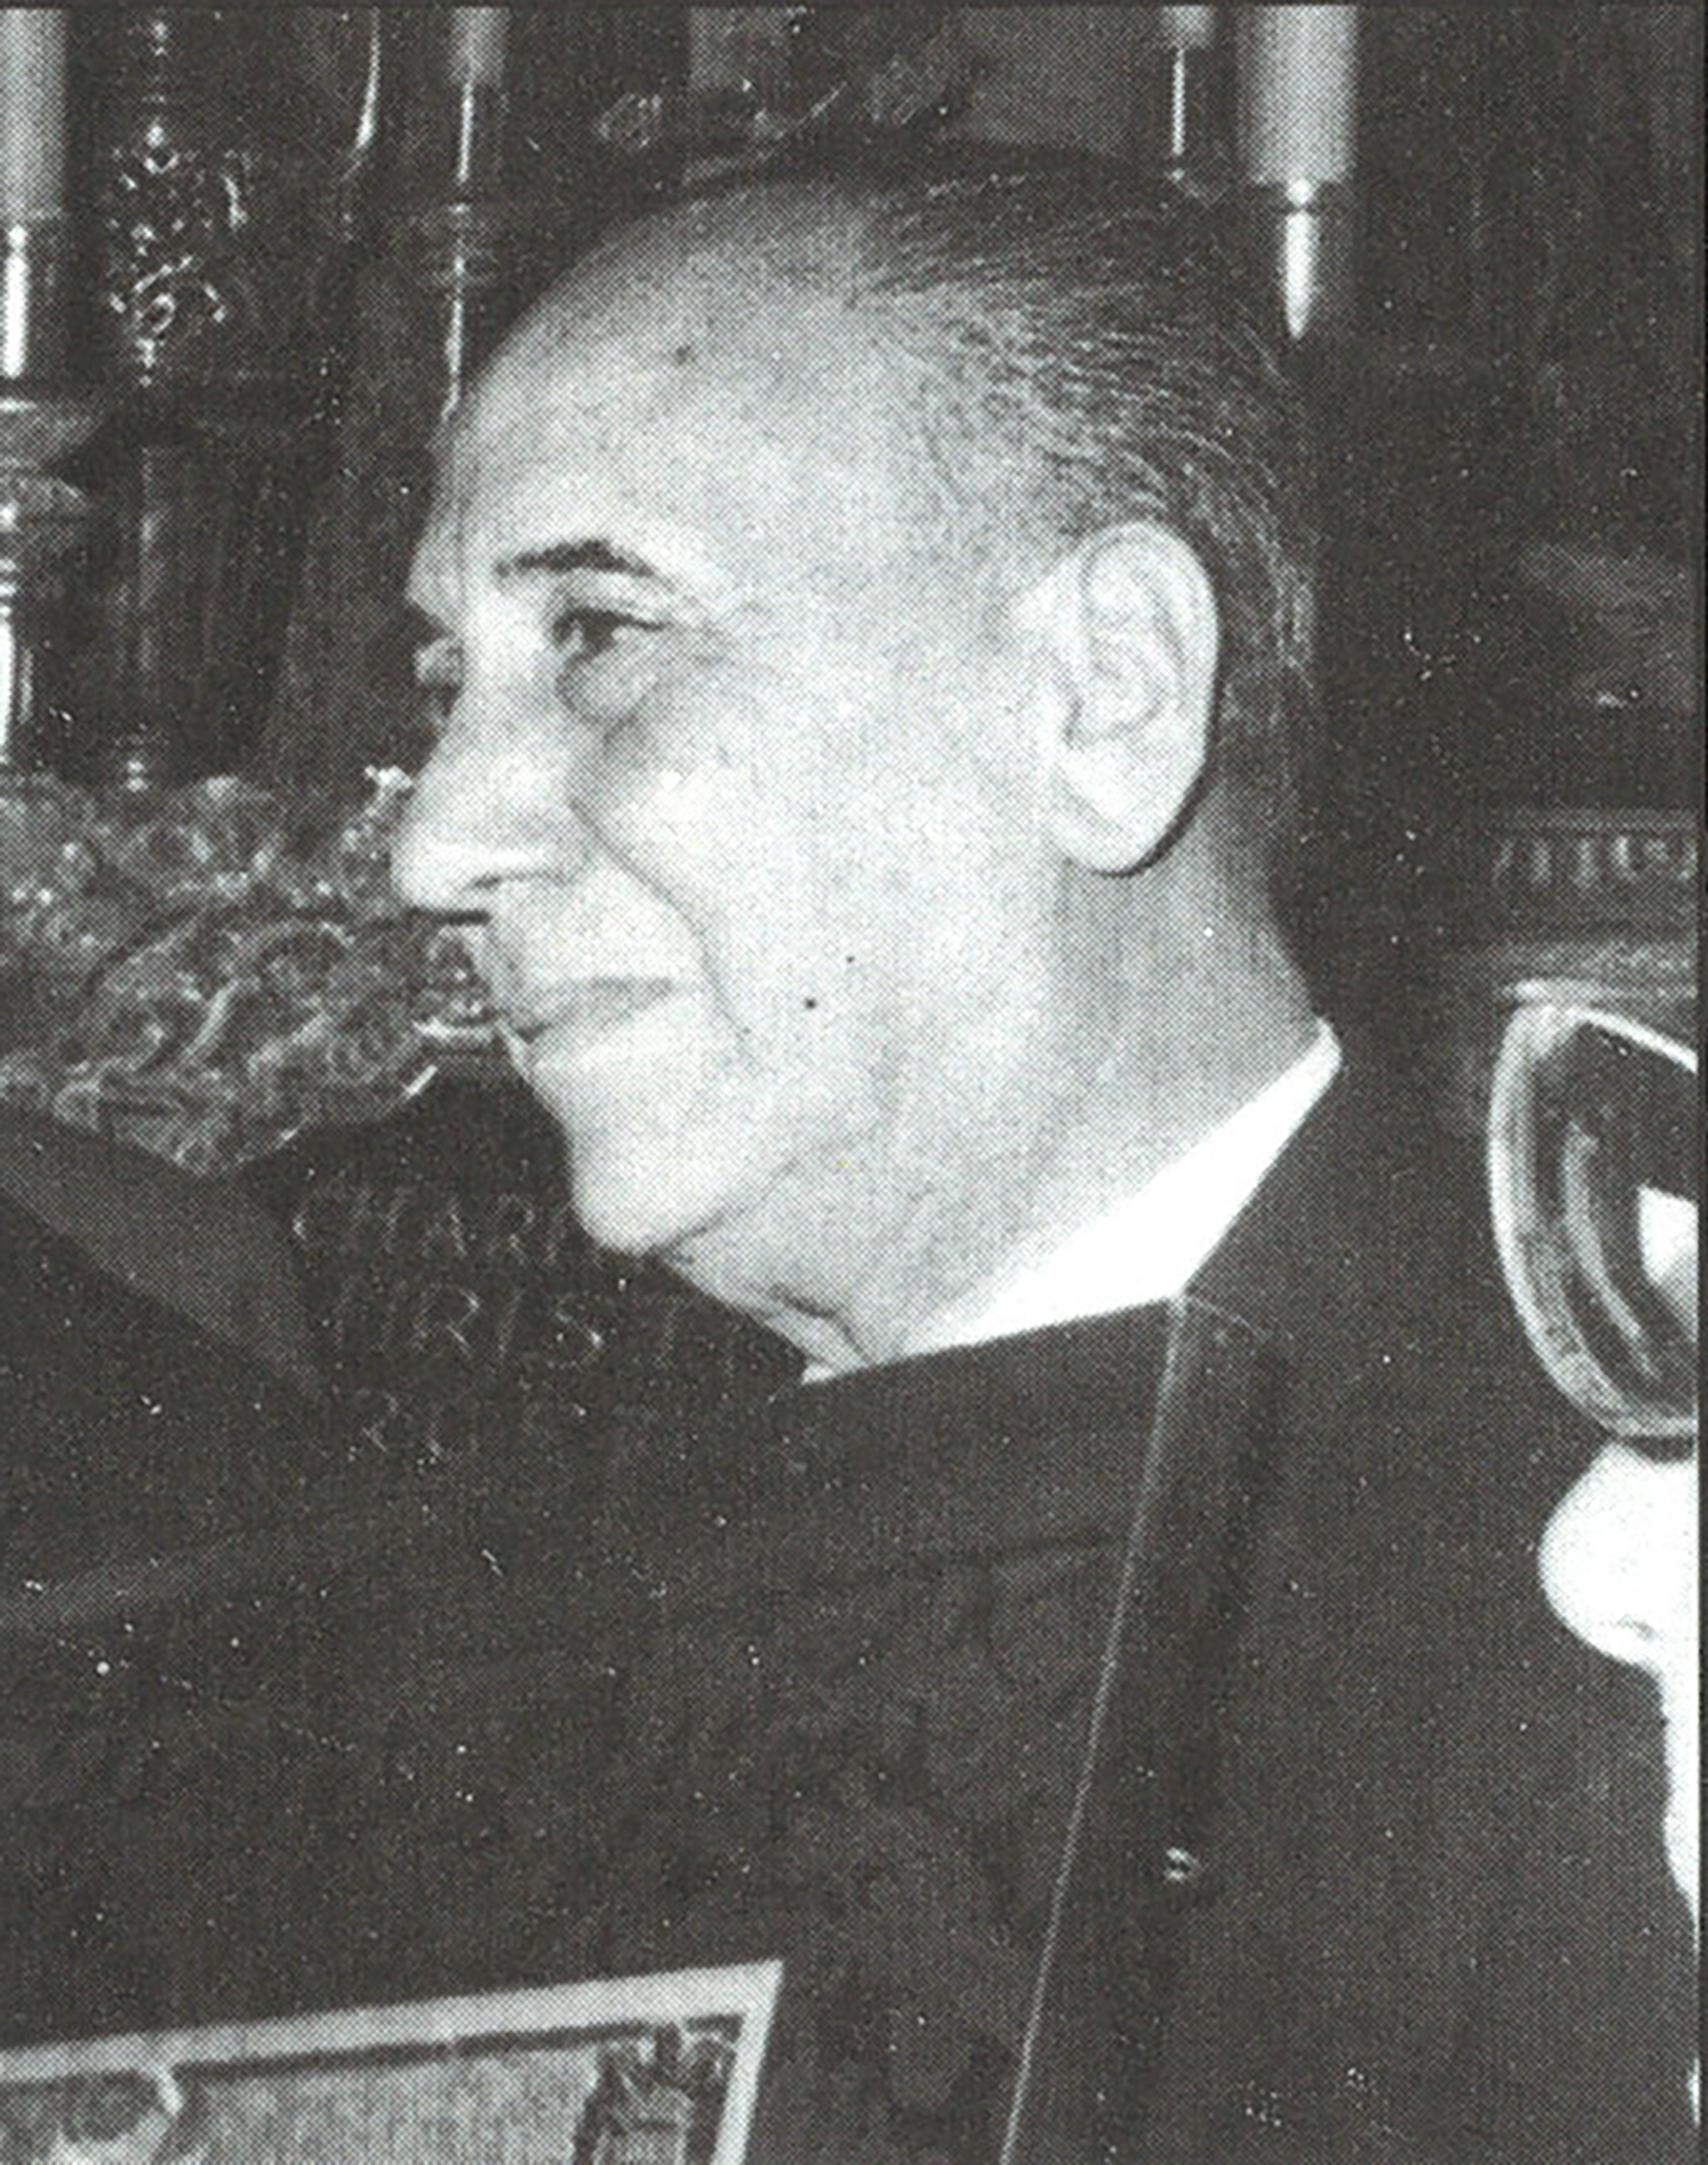 Raul Rispa